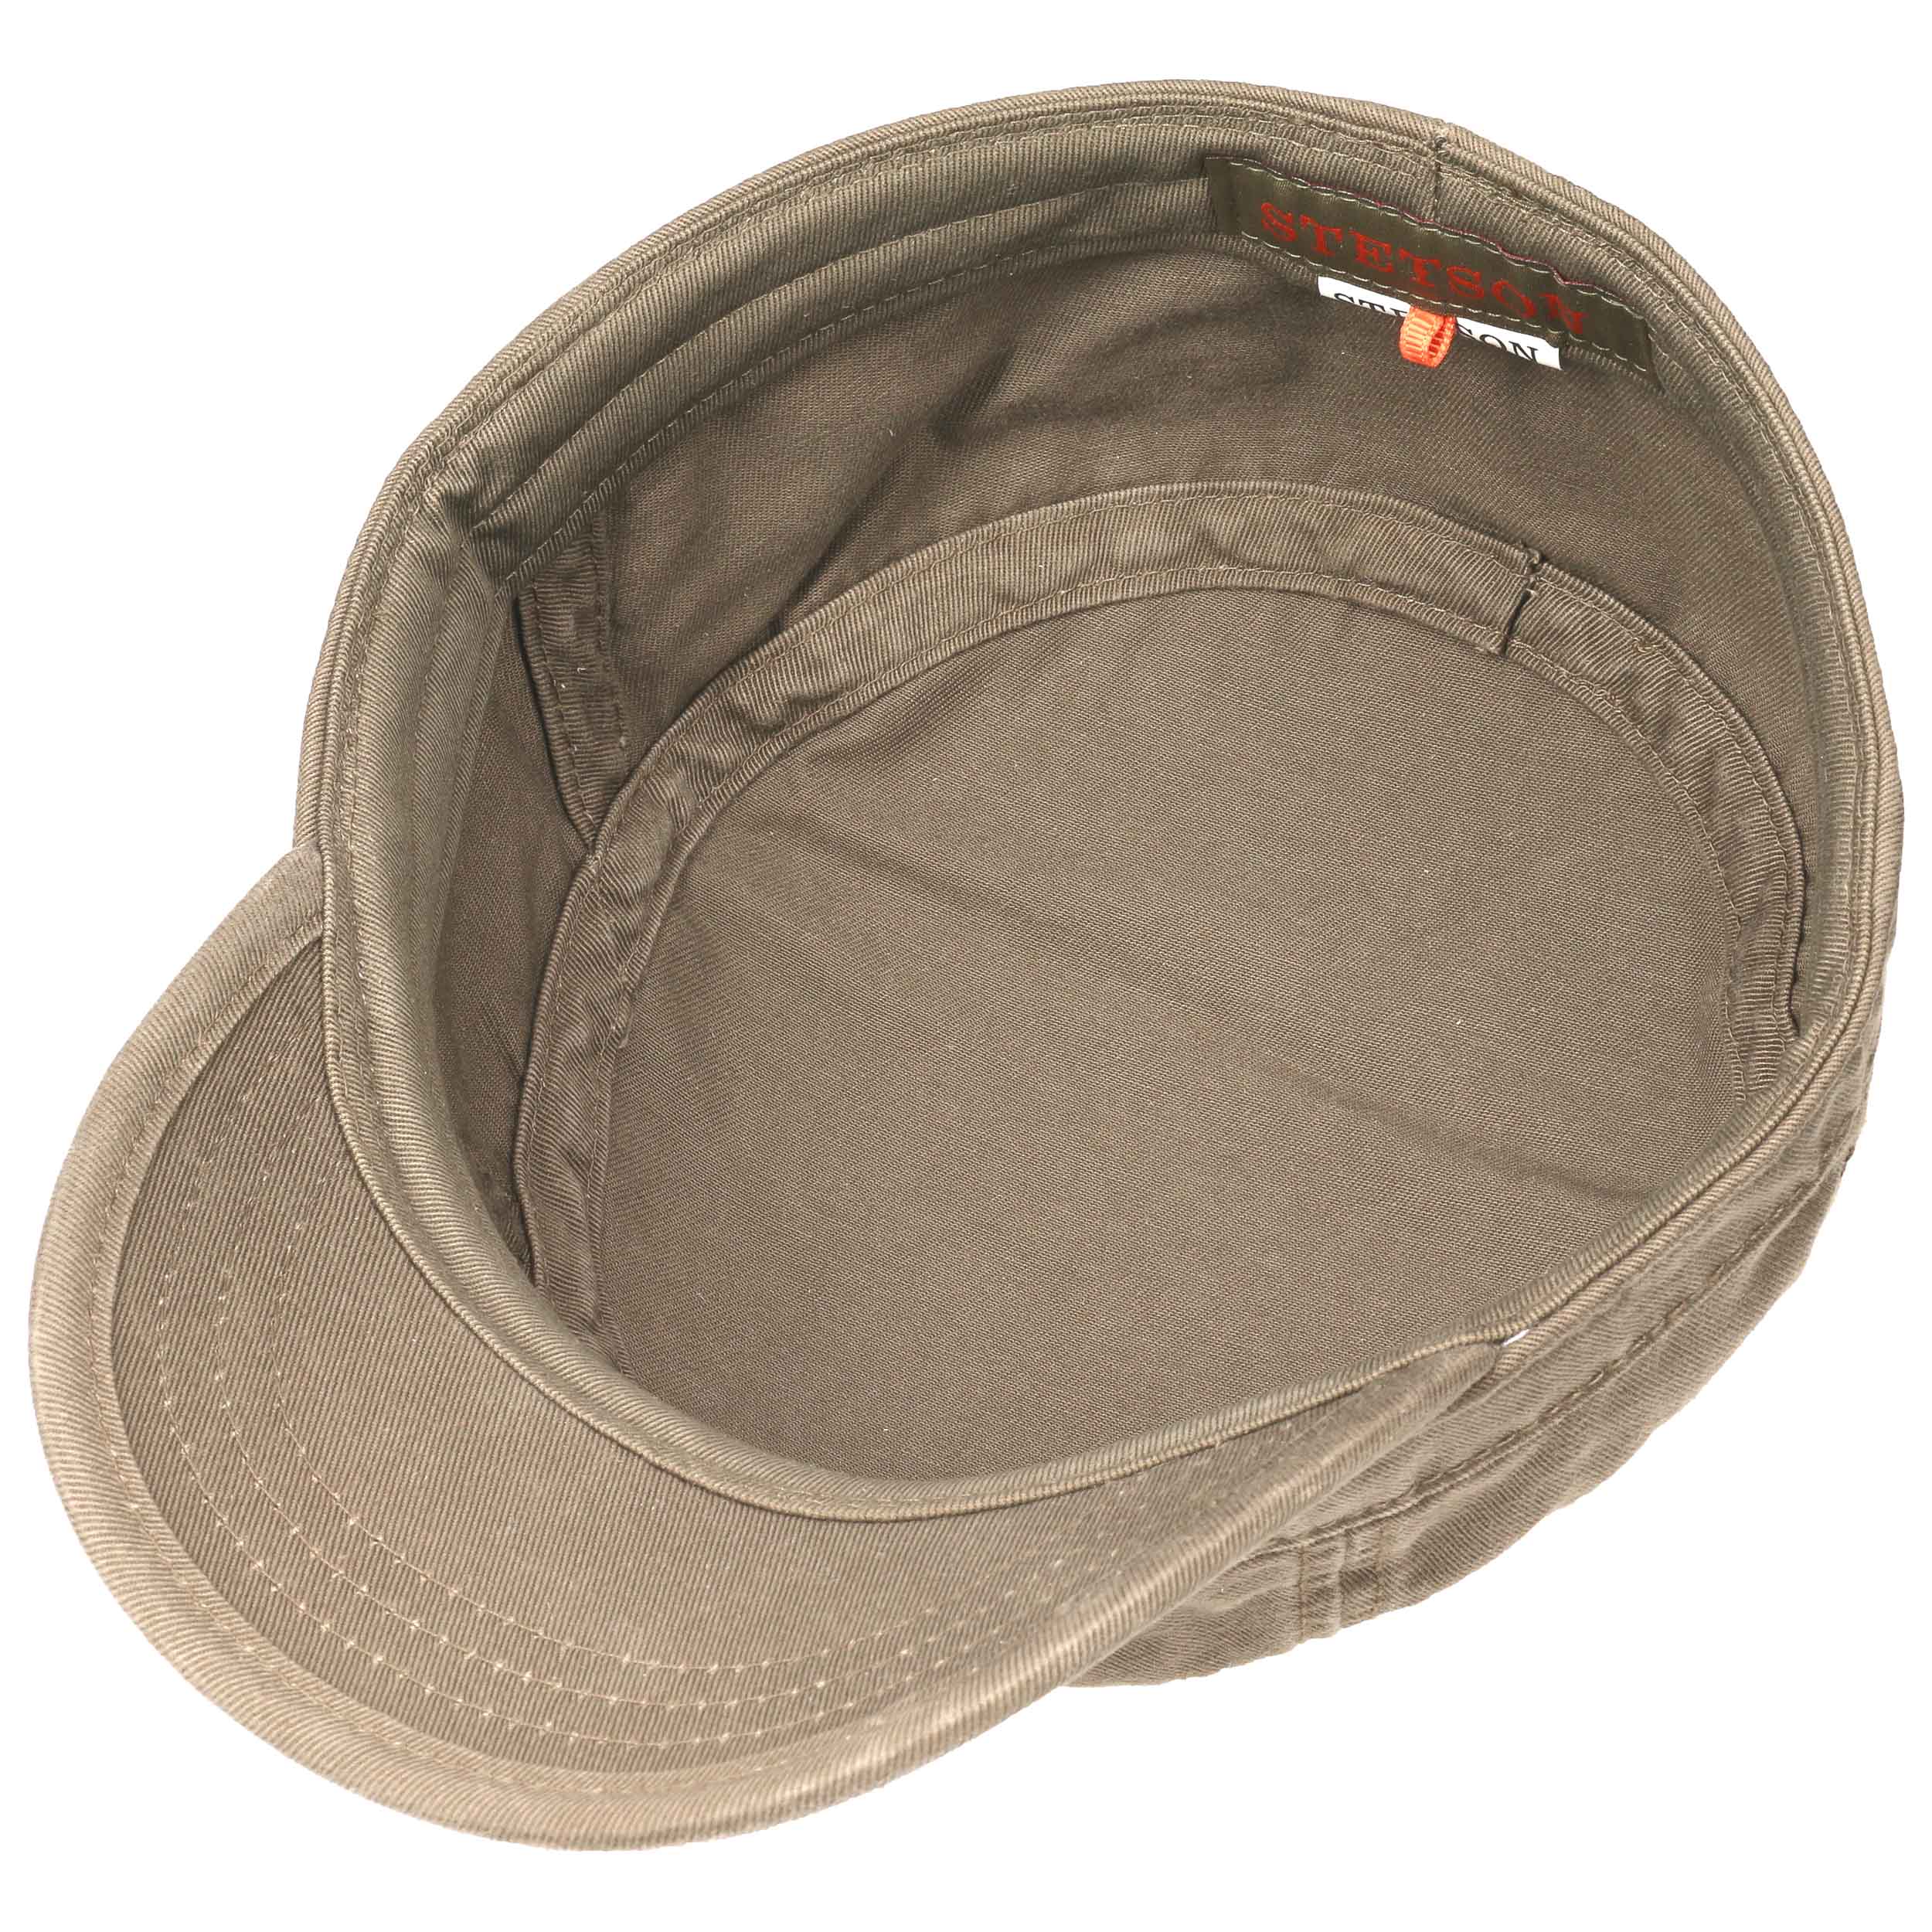 Gosper Army Cap by Stetson, EUR 39,00 --> Hats, caps & beanies shop ...